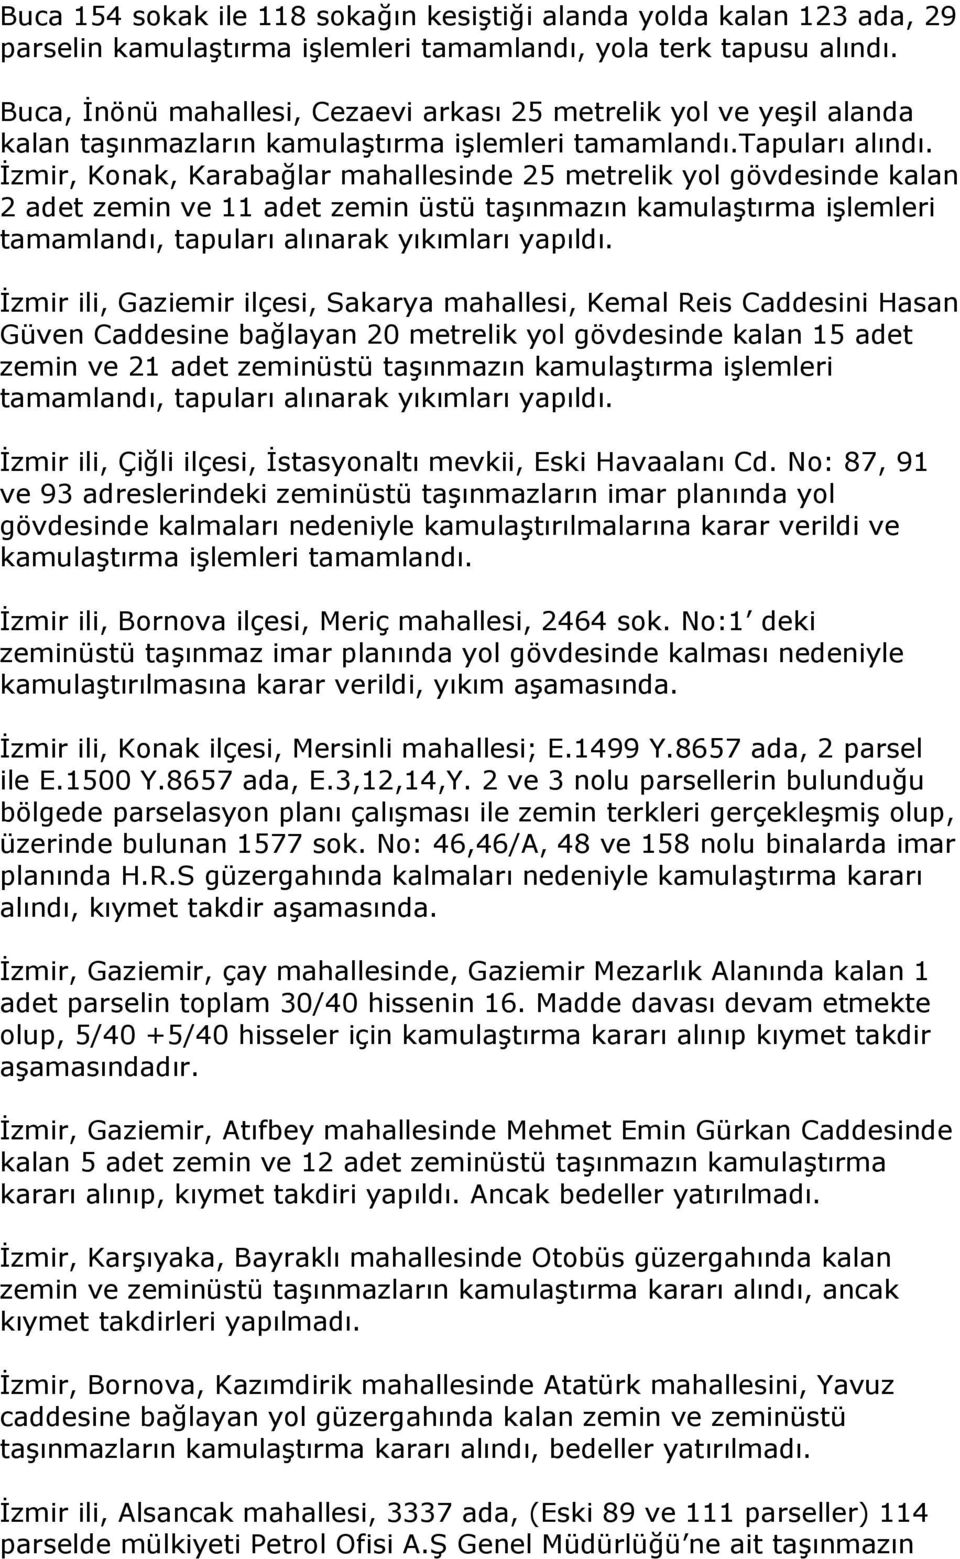 İzmir, Konak, Karabağlar mahallesinde 25 metrelik yol gövdesinde kalan 2 adet zemin ve 11 adet zemin üstü taşınmazın kamulaştırma işlemleri tamamlandı, tapuları alınarak yıkımları yapıldı.